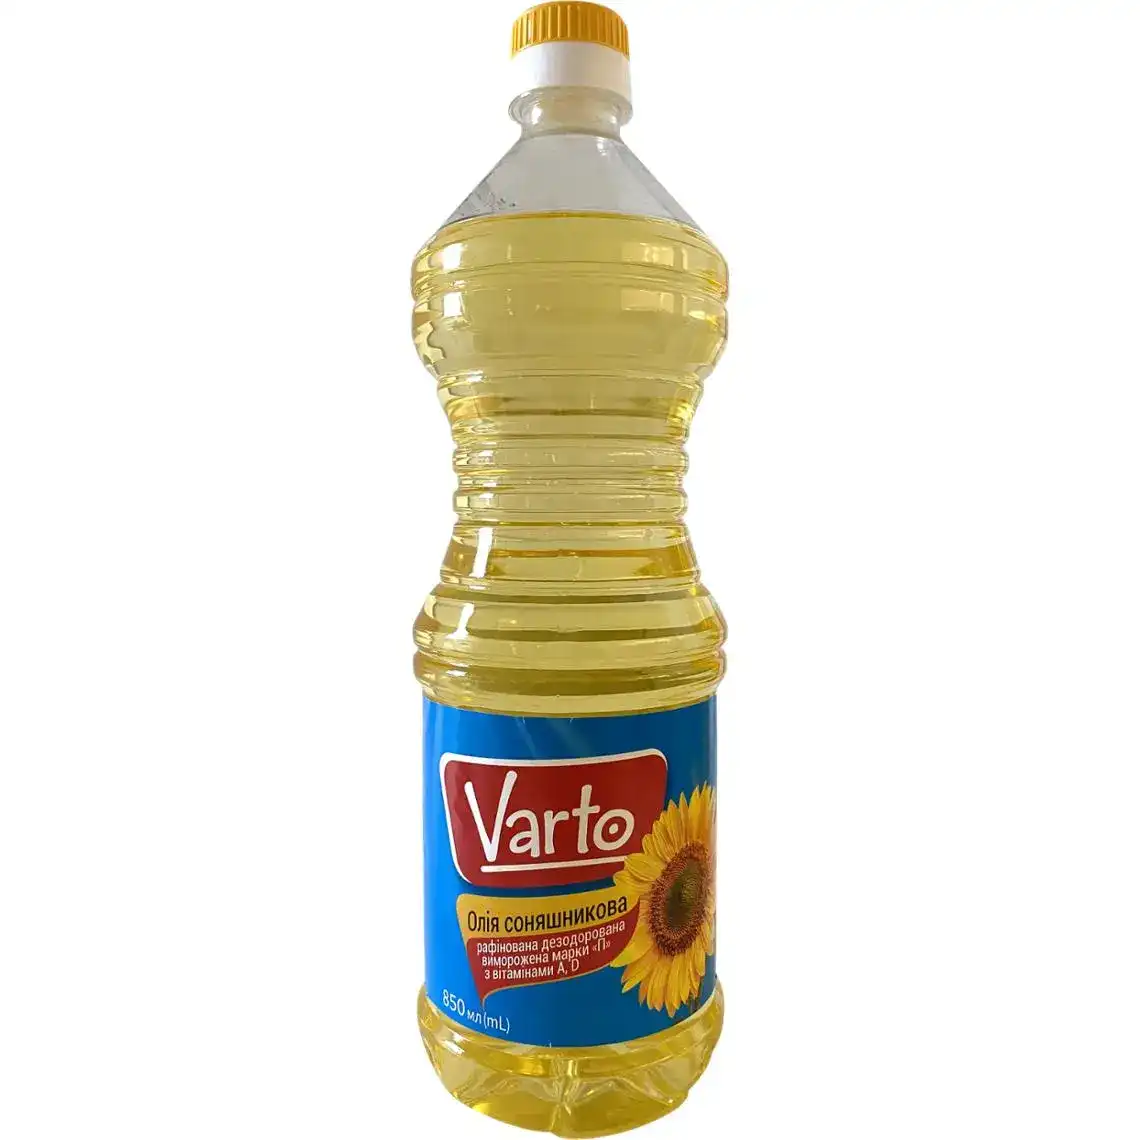 Олія соняшникова Varto рафінована дезодорована виморожена з вітамінами А, D 850 мл